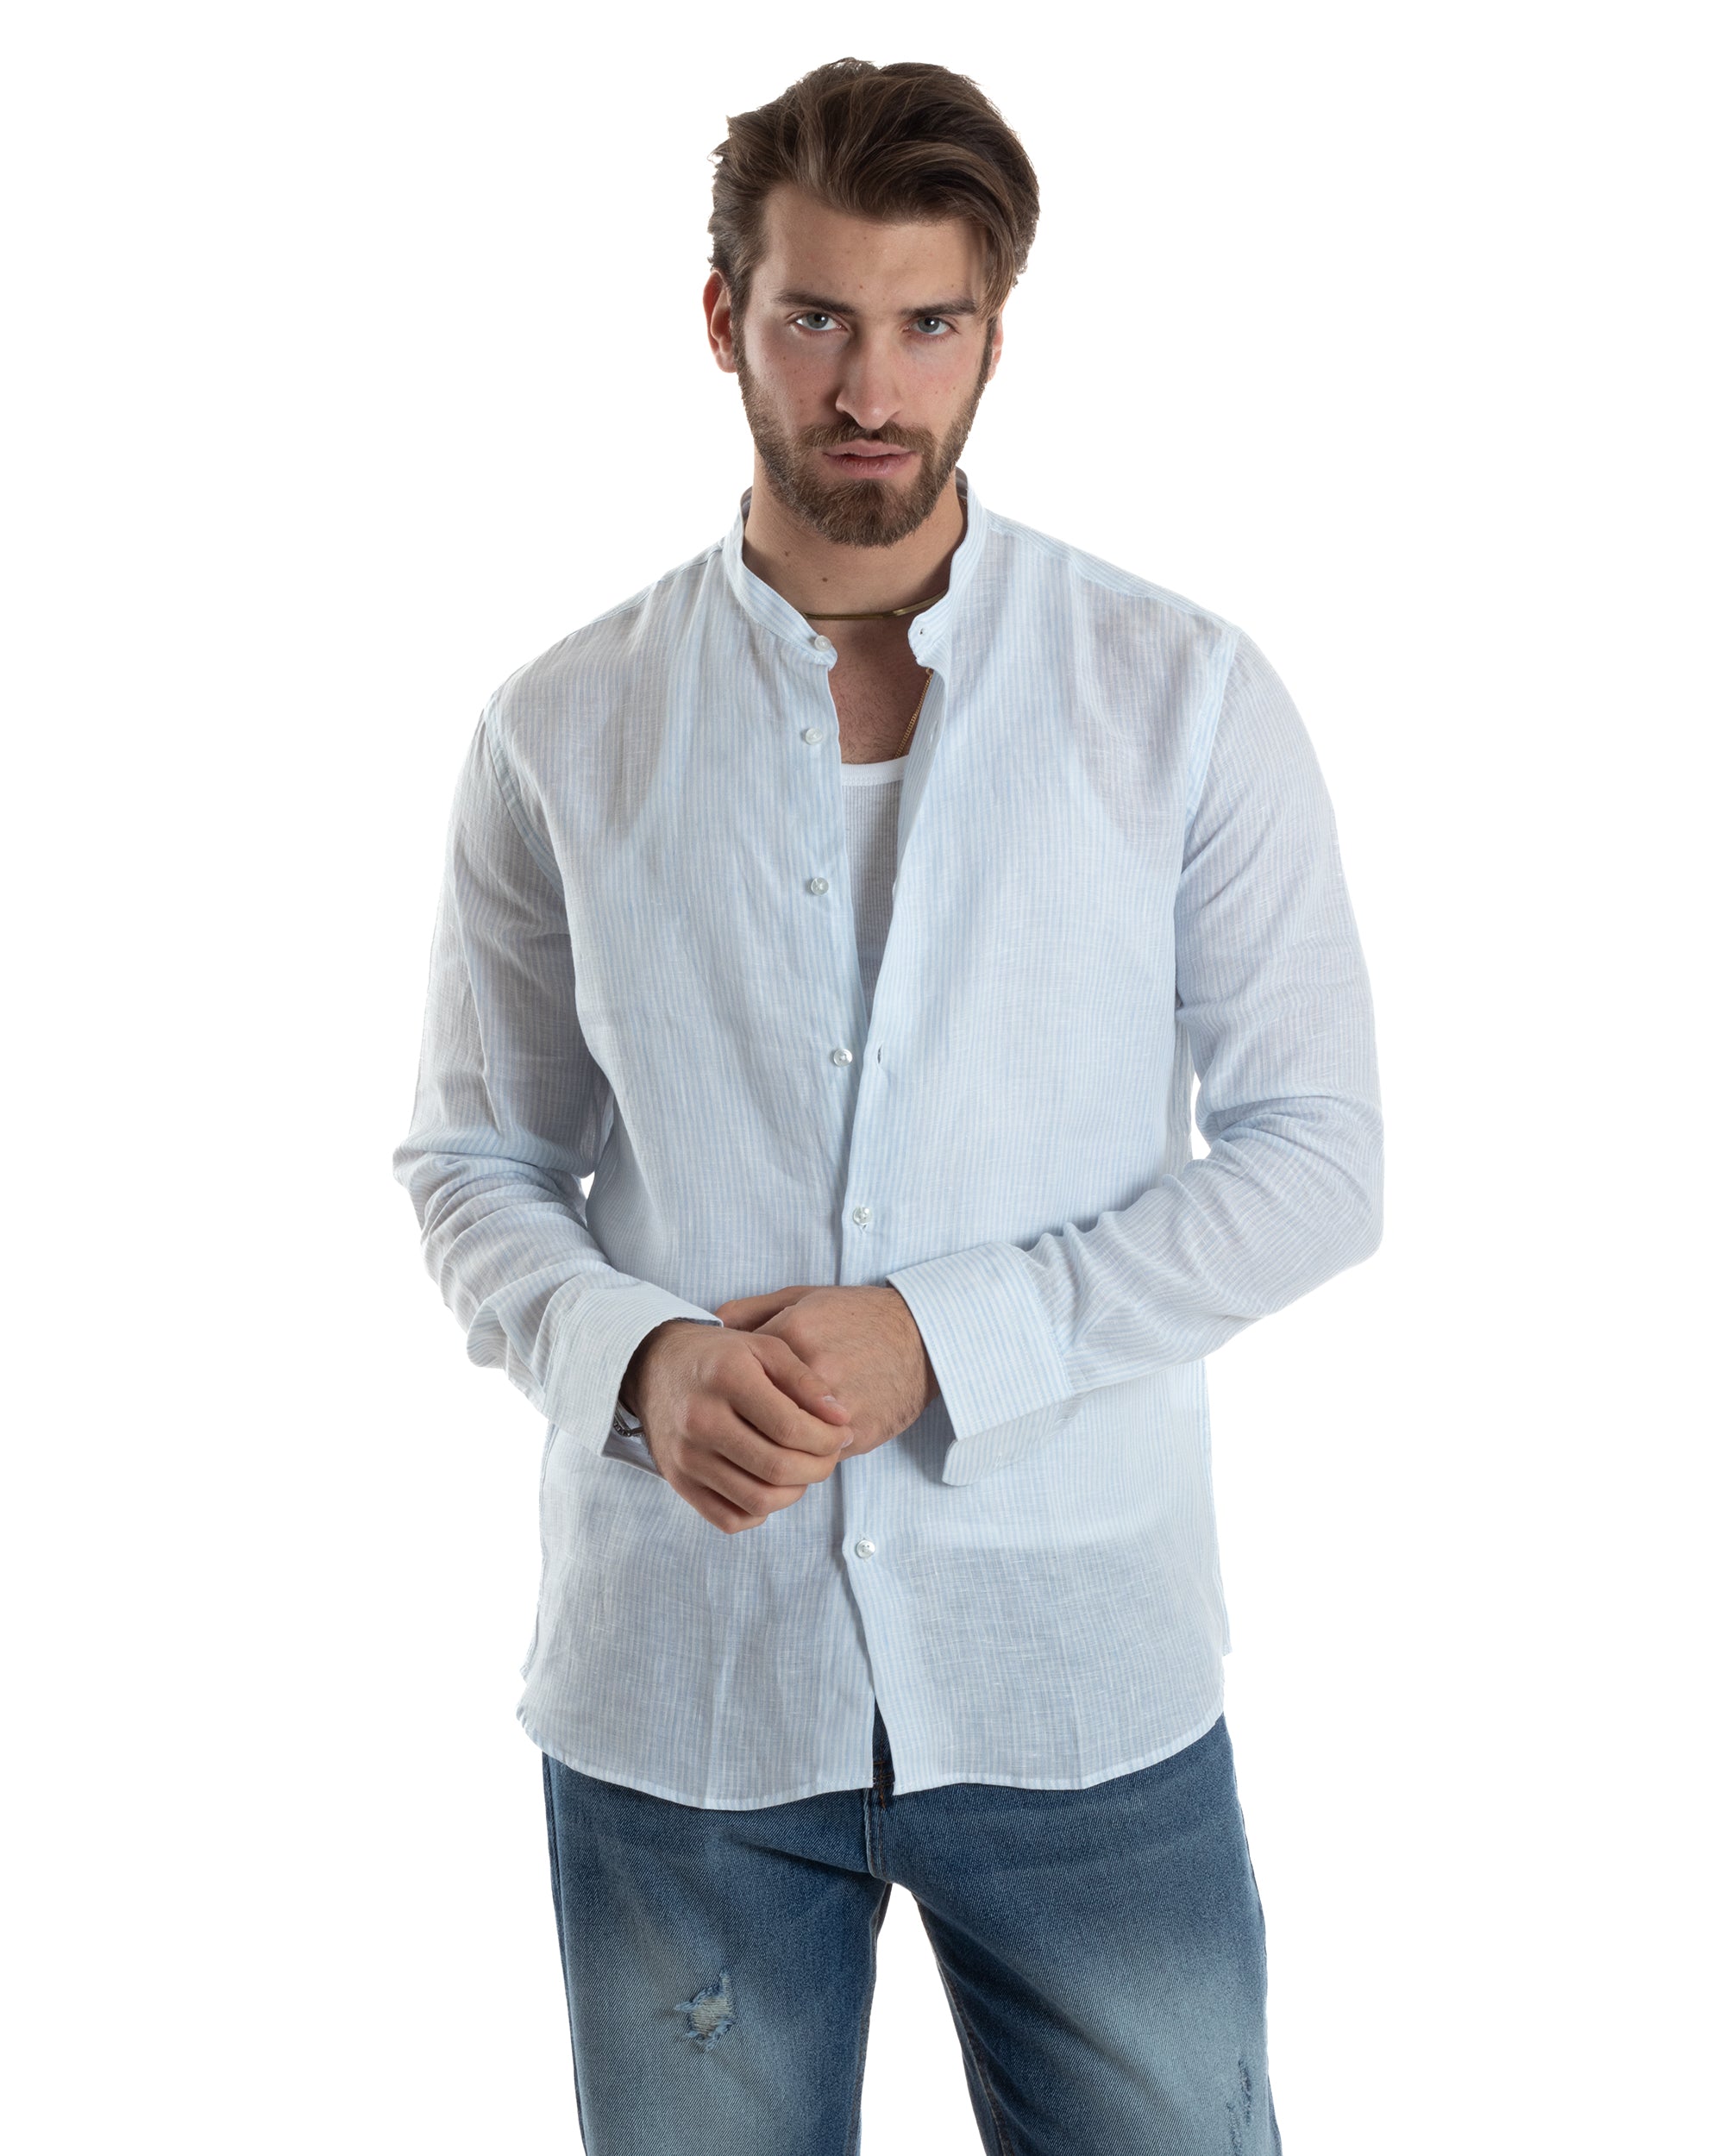 Men's Linen Shirt Mandarin Collar Long Sleeve Regular Fit Narrow Stripe Light Blue GIOSAL-C2421A